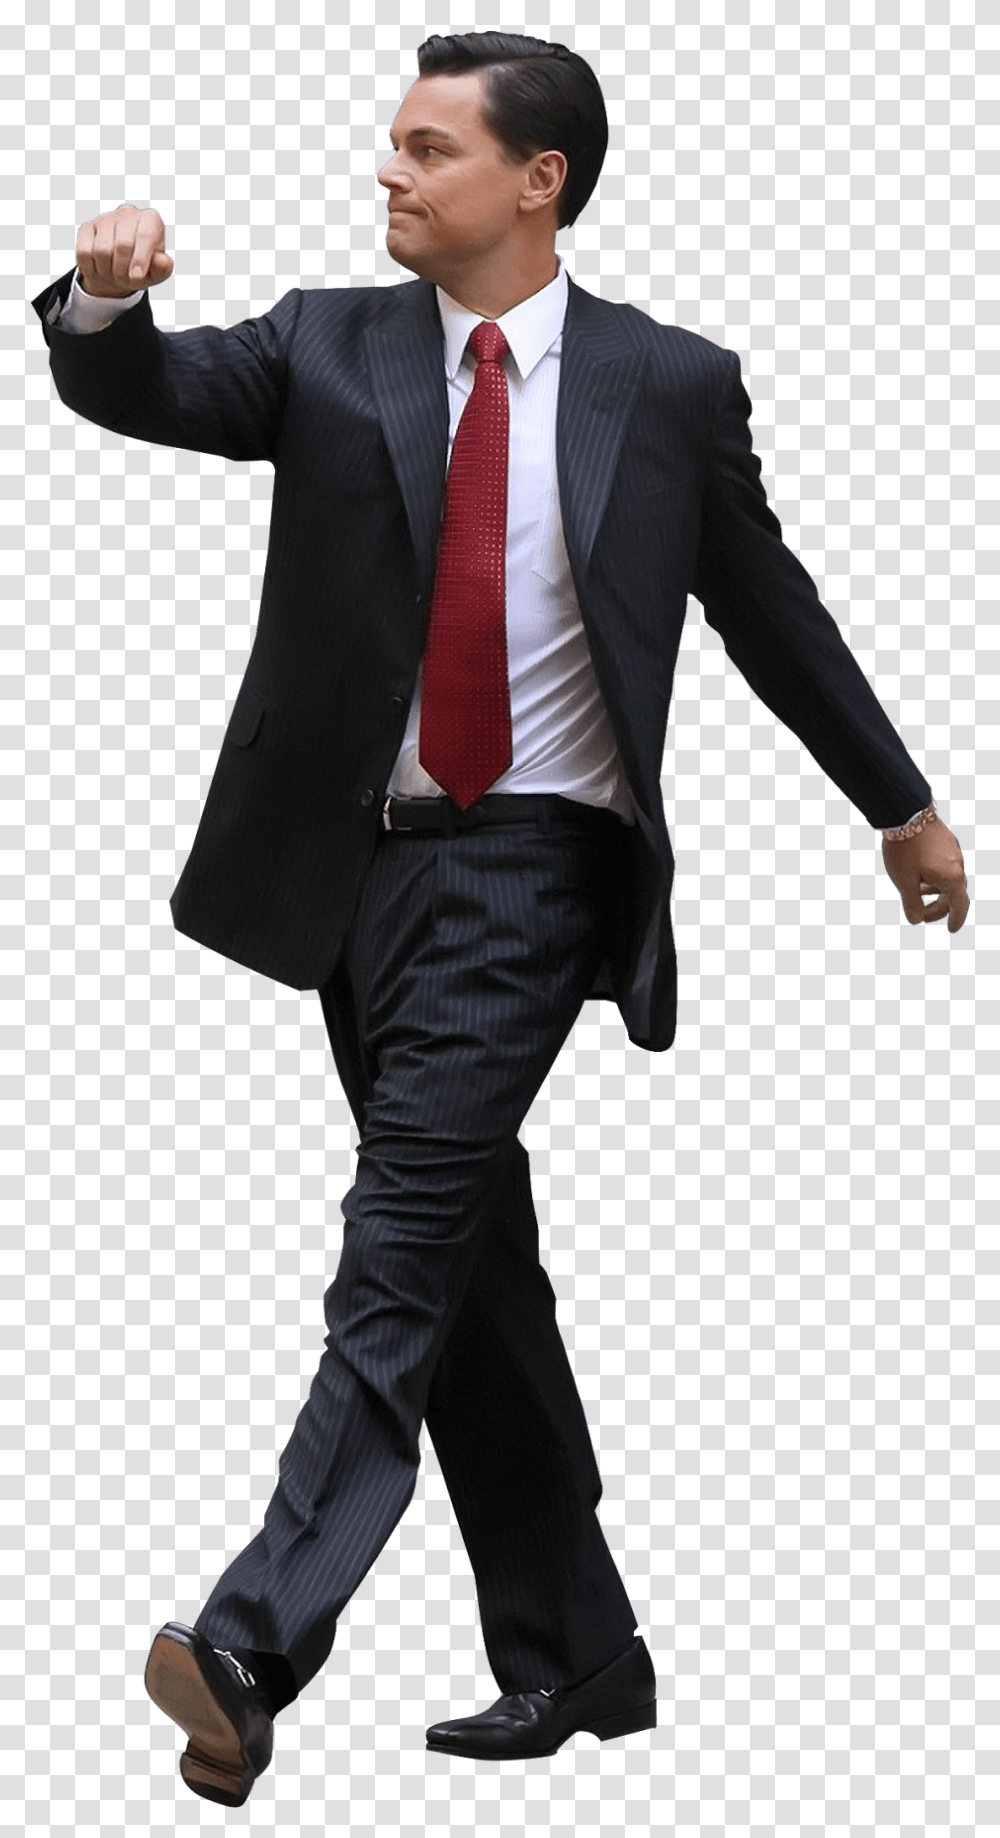 Walking Download Leonardo Dicaprio Background, Tie, Suit, Overcoat Transparent Png